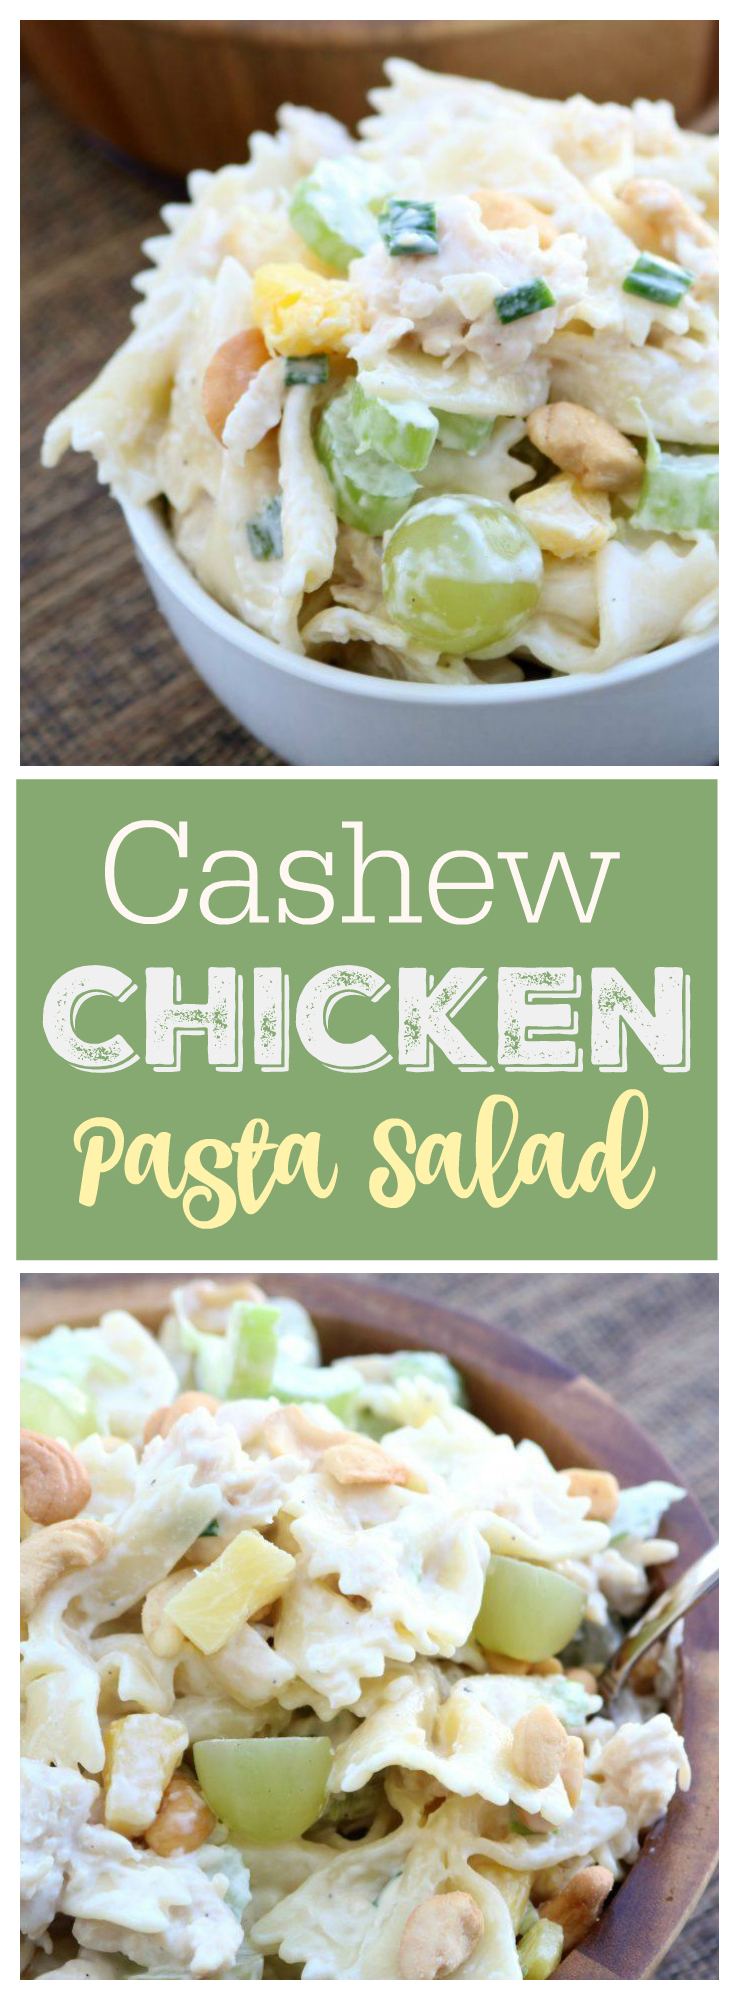 Cashew Chicken Pasta Salad - Sugar n' Spice Gals